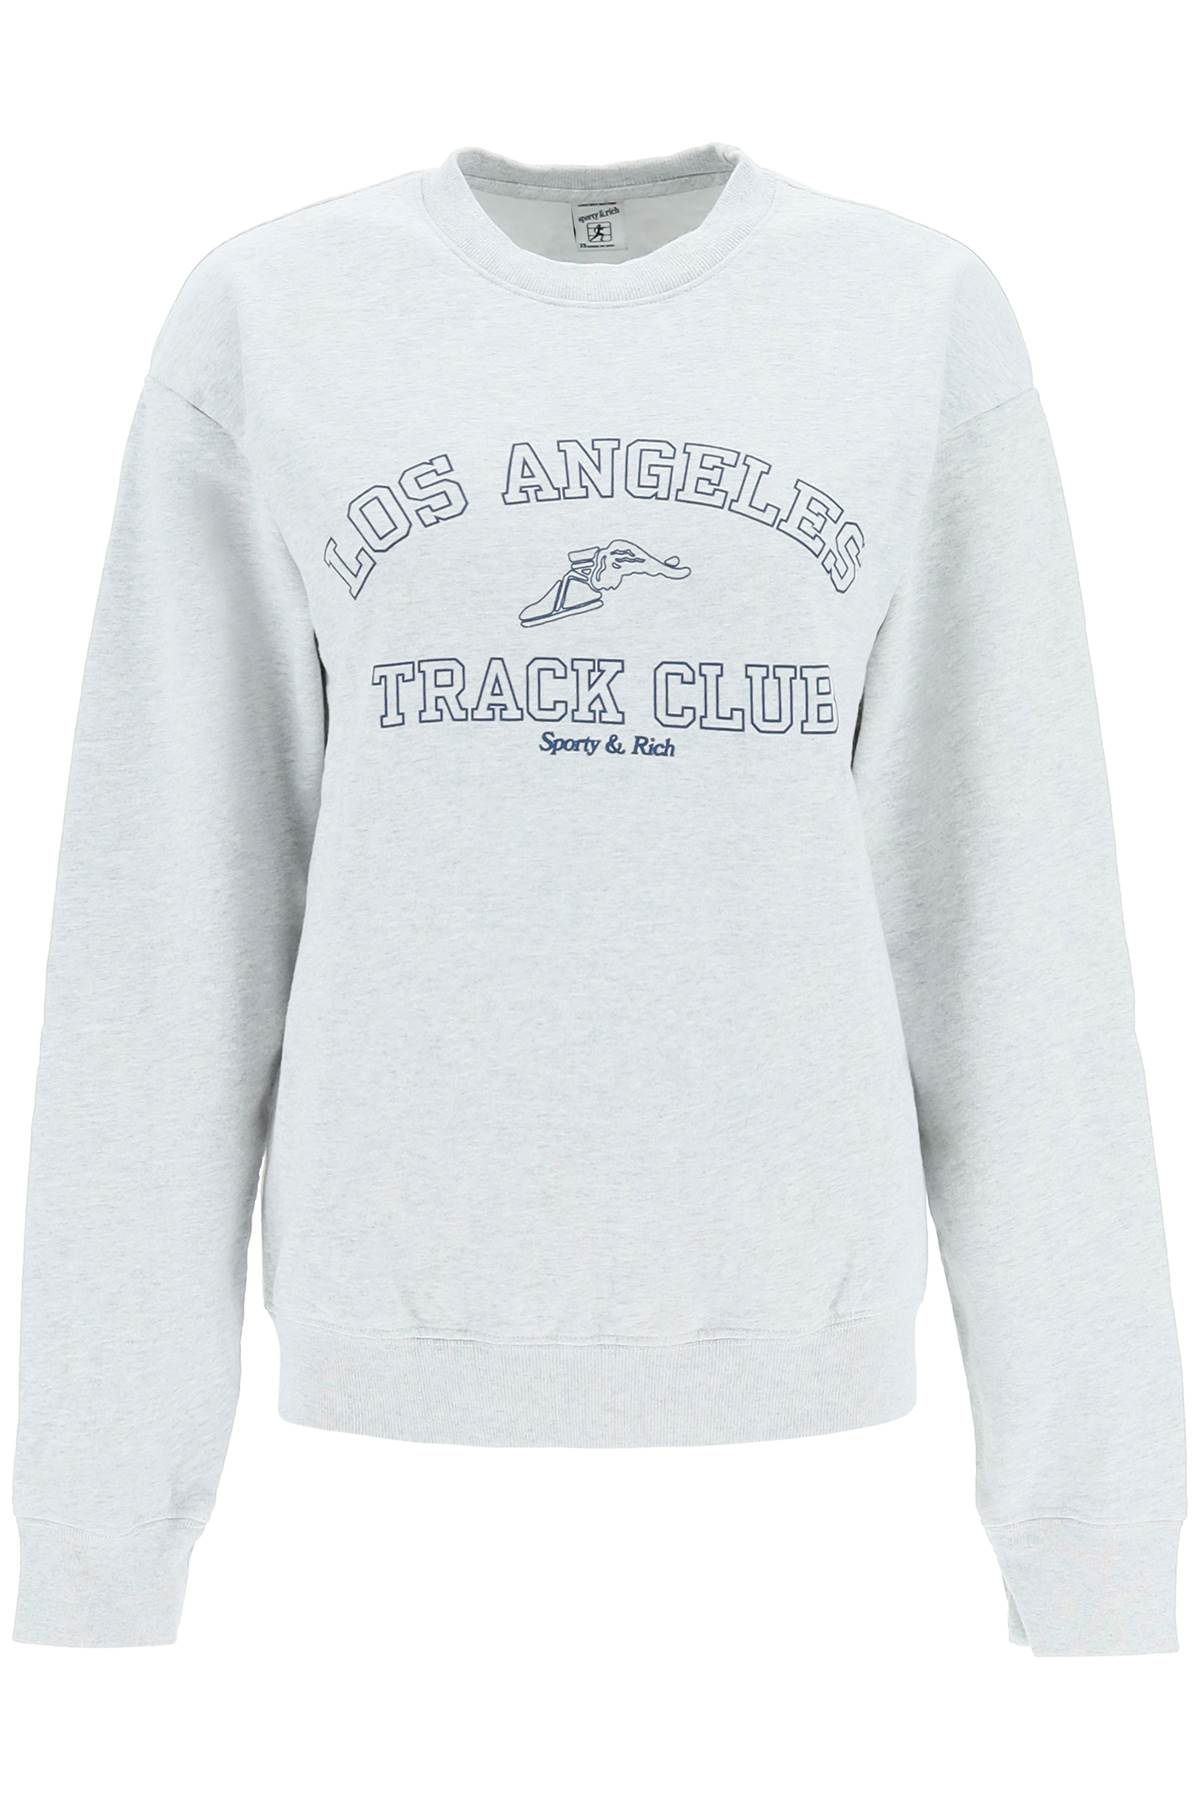 Sporty & Rich track Club Crewneck Sweatshirt